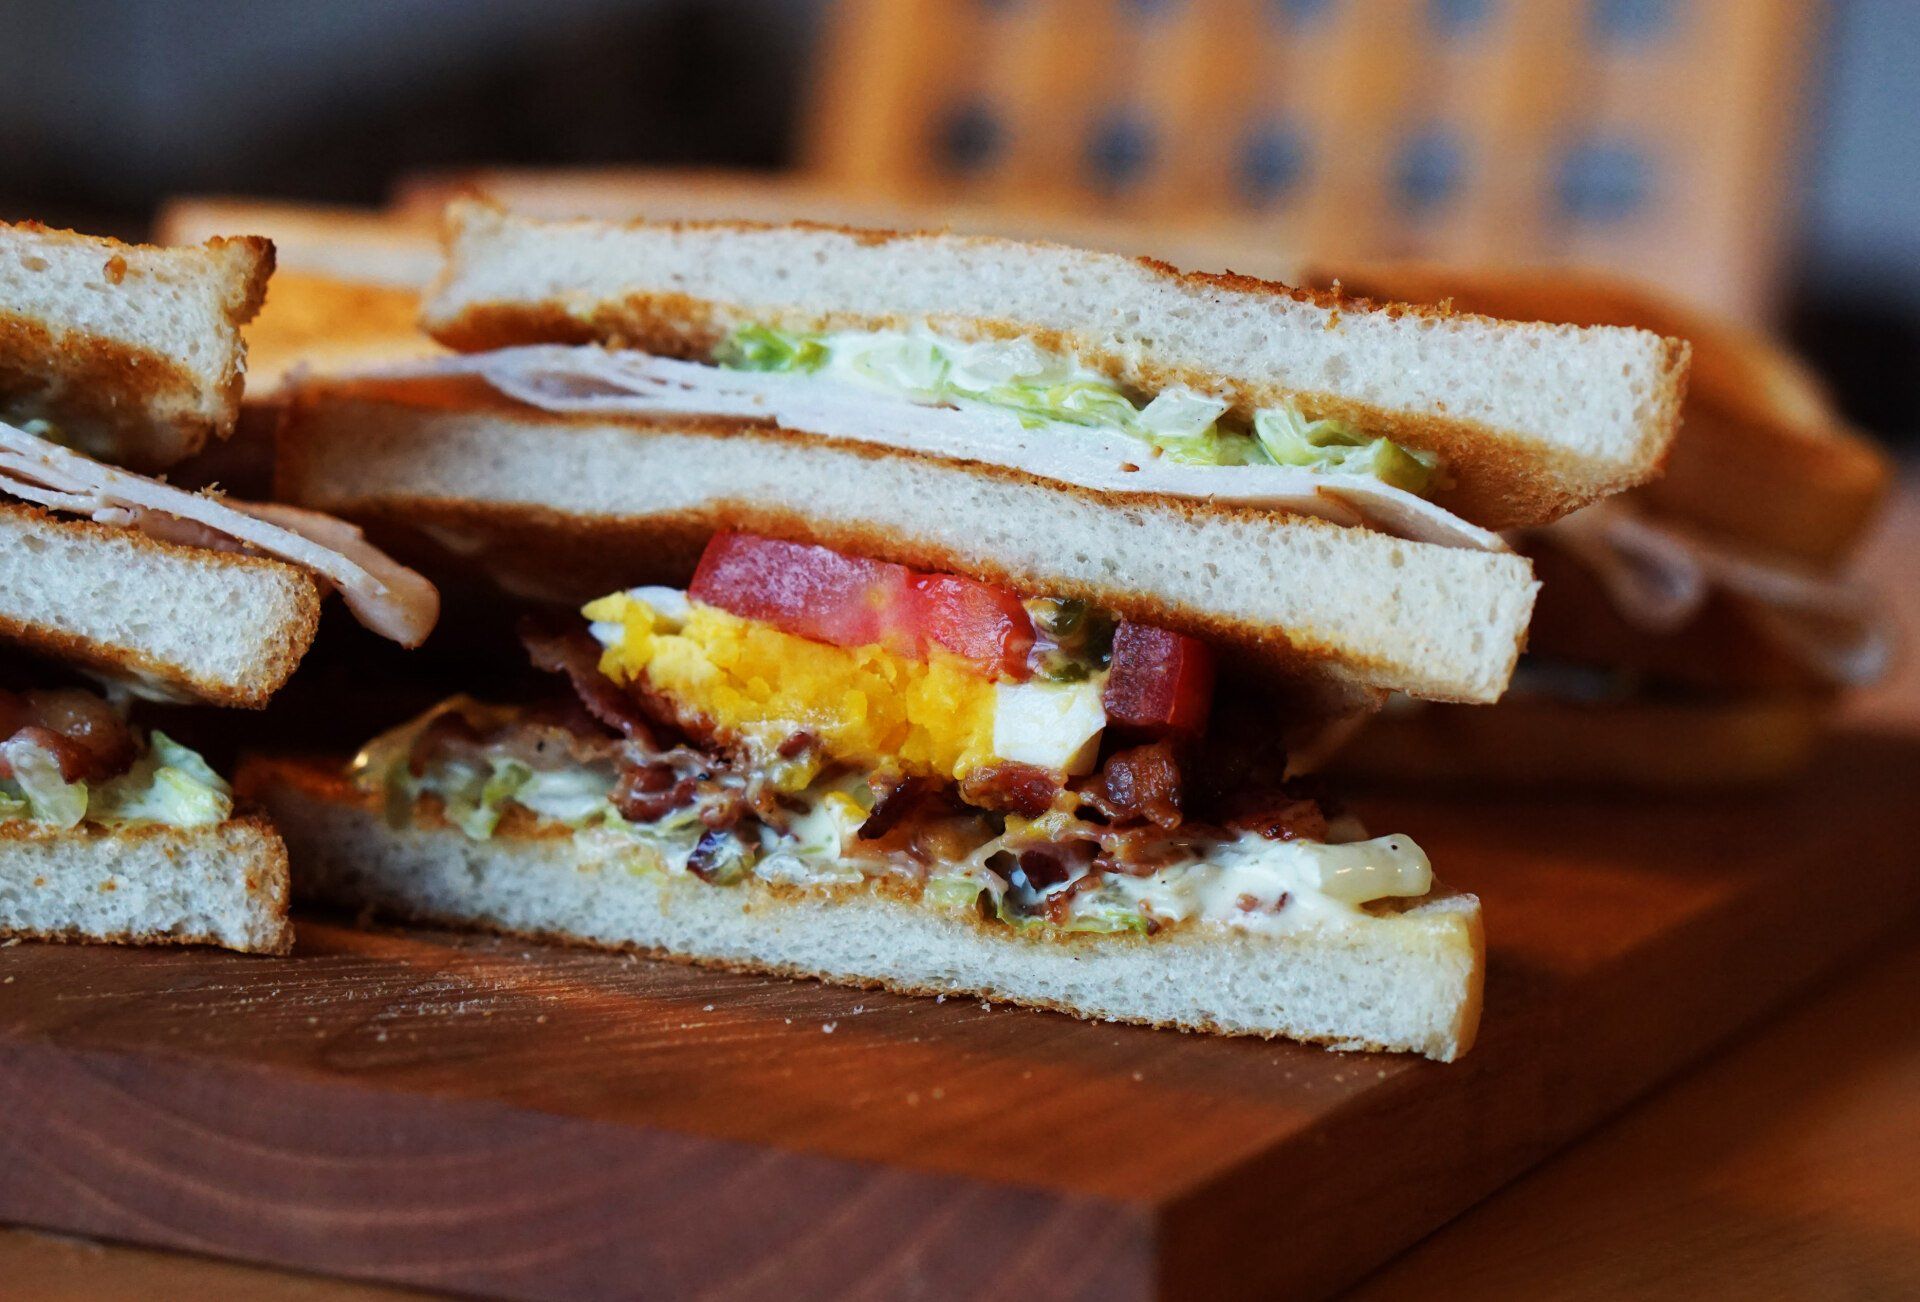 A club sandwich is cut in half on a wooden cutting board.